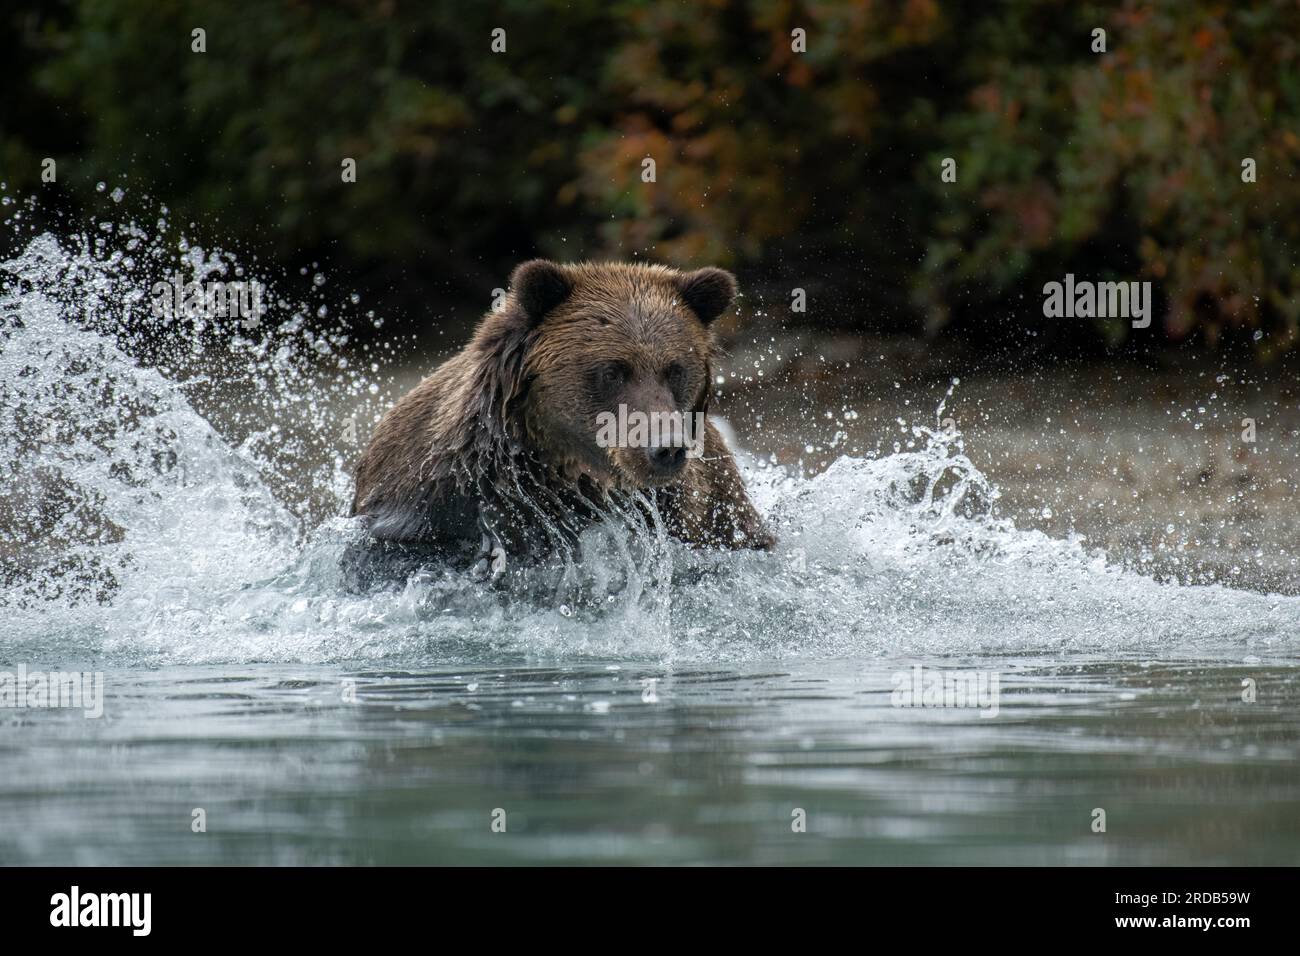 L'orso che caccia il salmone. ALASKA; USA: Le fotografie MAGICHE hanno mostrato un orso grizzly a grandezza naturale che spruzza in un fiume. Nell'immagine, il gigantesco b marrone Foto Stock